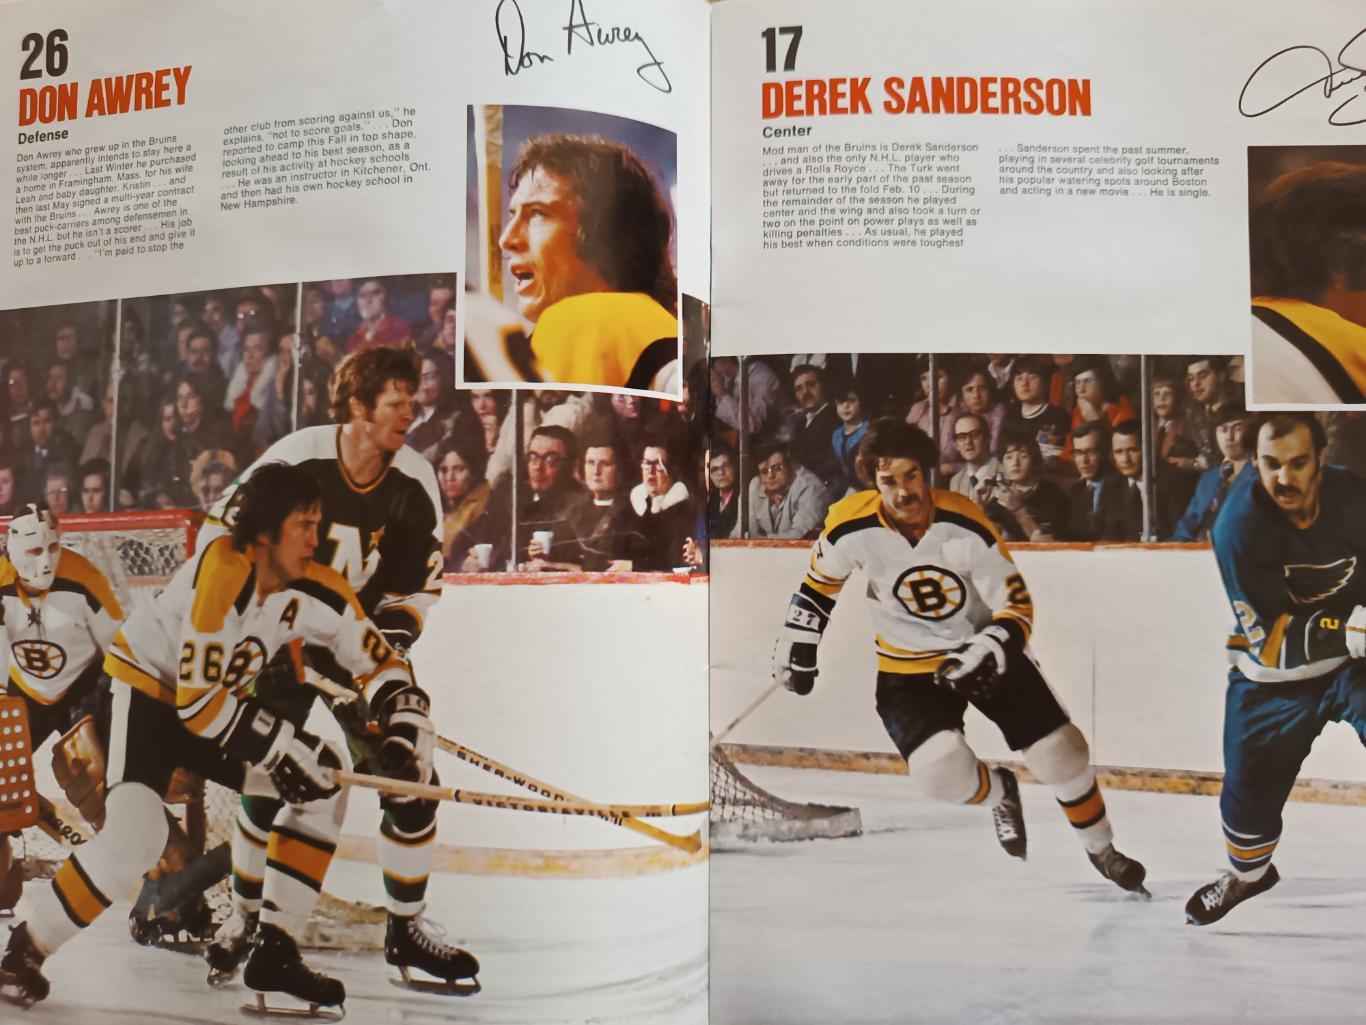 ХОККЕЙ АЛЬБОМ ЕЖЕГОДНИК НХЛ БОСТОН БРЮИНЗ 1973-74 NHL YEARBOOK BOSTON BRUINS 3